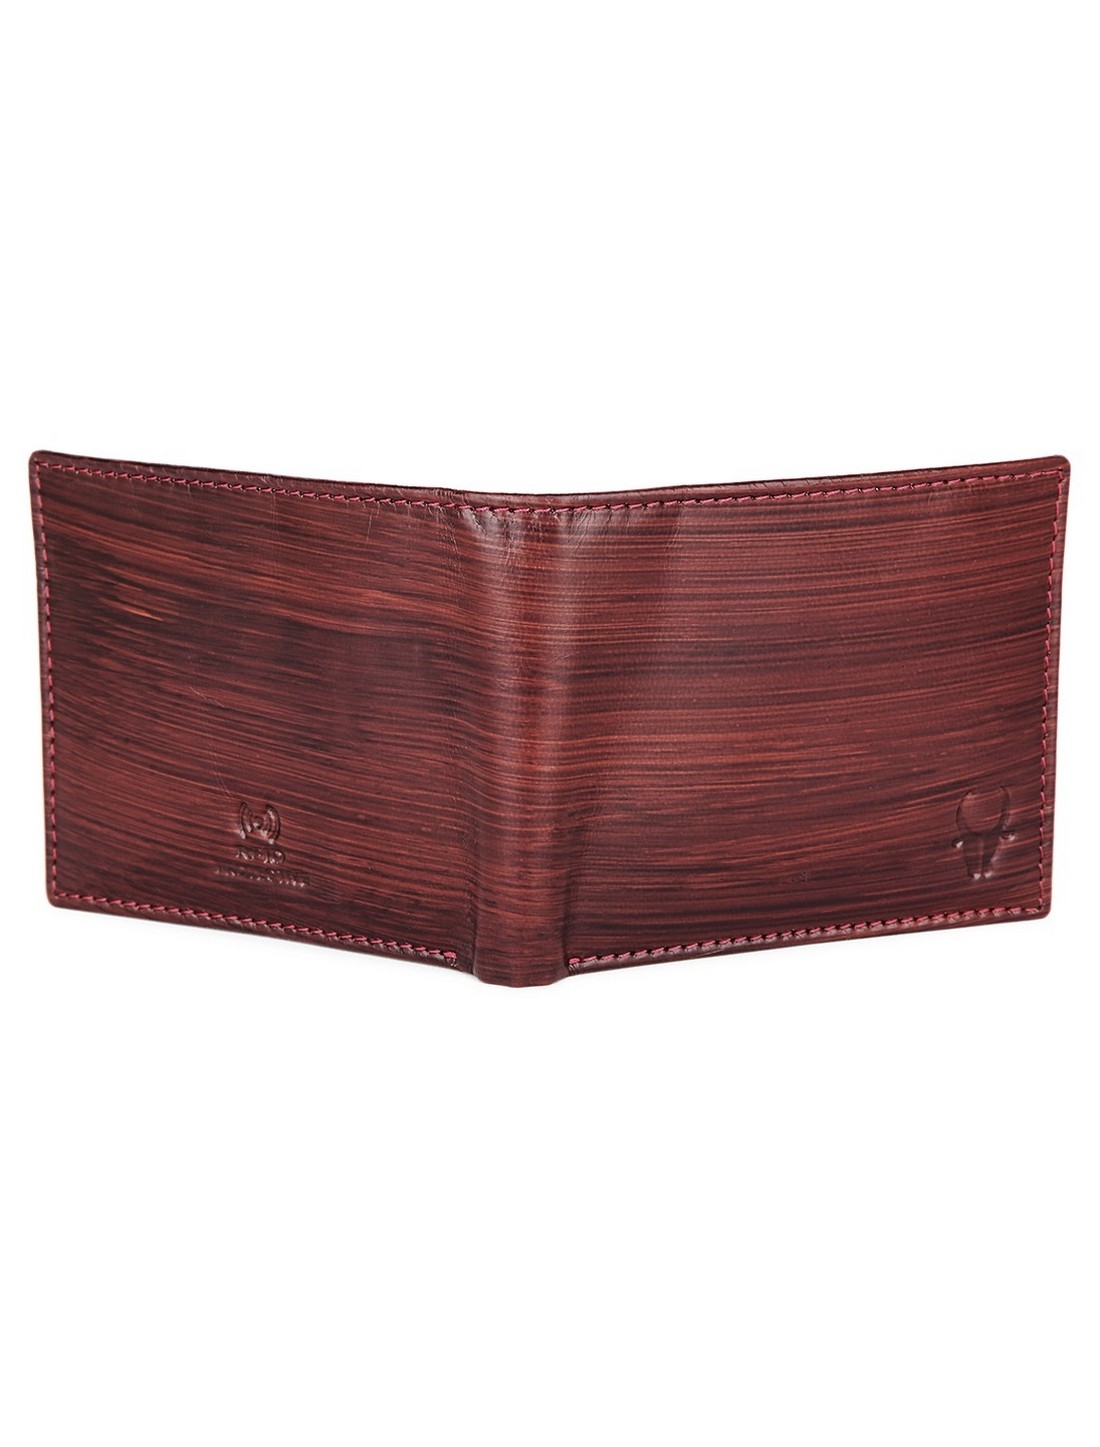 WildHorn | WildHorn Top Grain Leather Brown Wallet for Men 4